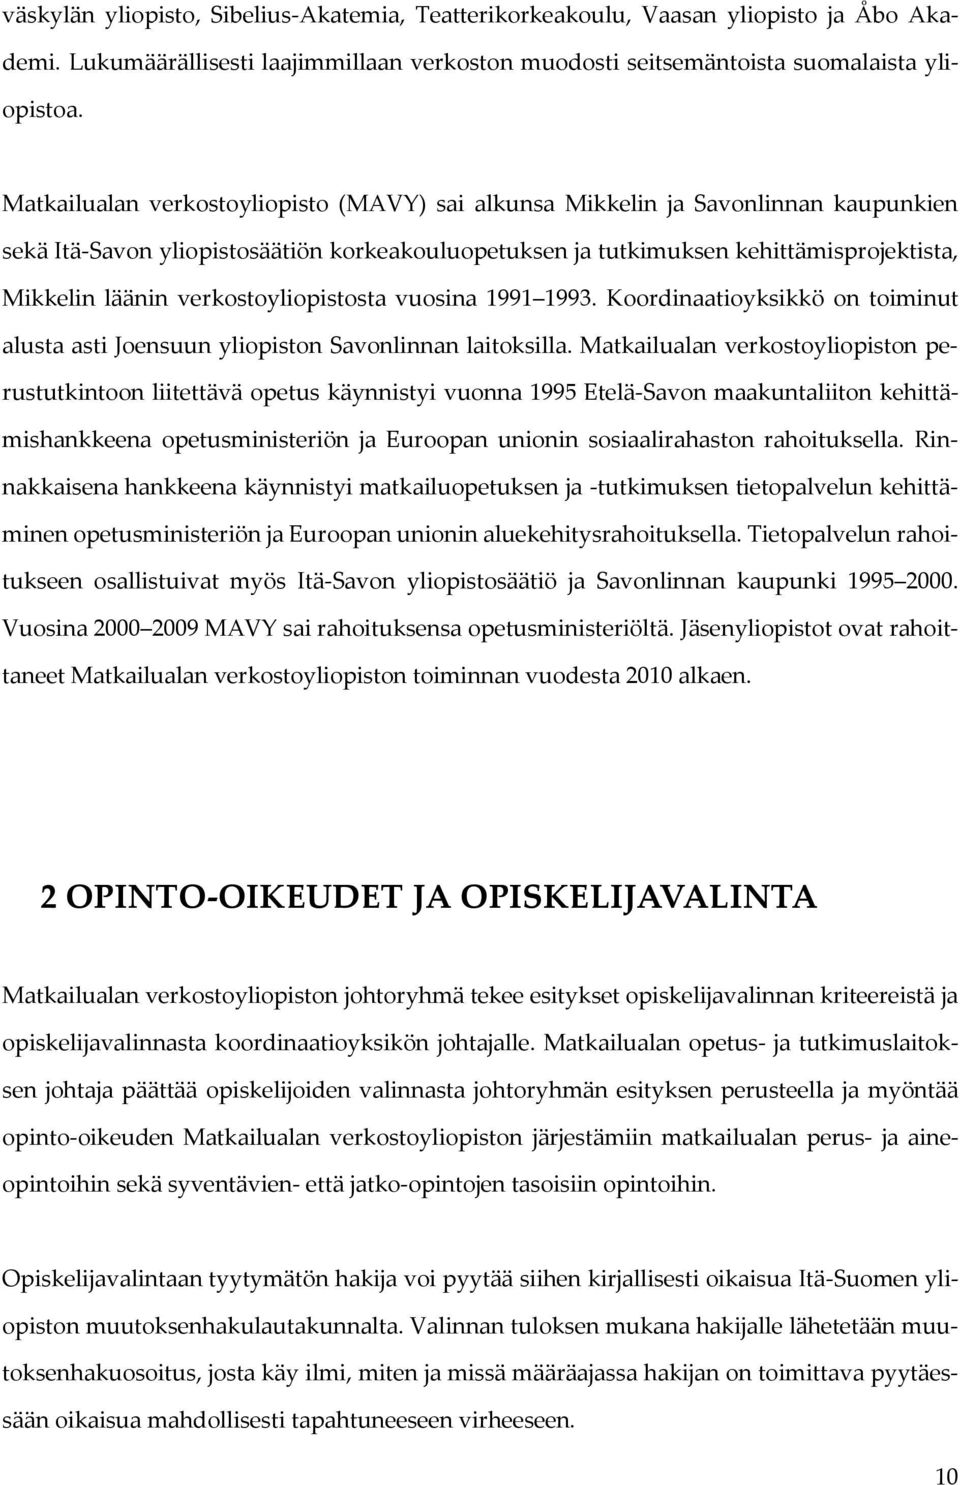 verkostoyliopistosta vuosina 1991 1993. Koordinaatioyksikkö on toiminut alusta asti Joensuun yliopiston Savonlinnan laitoksilla.